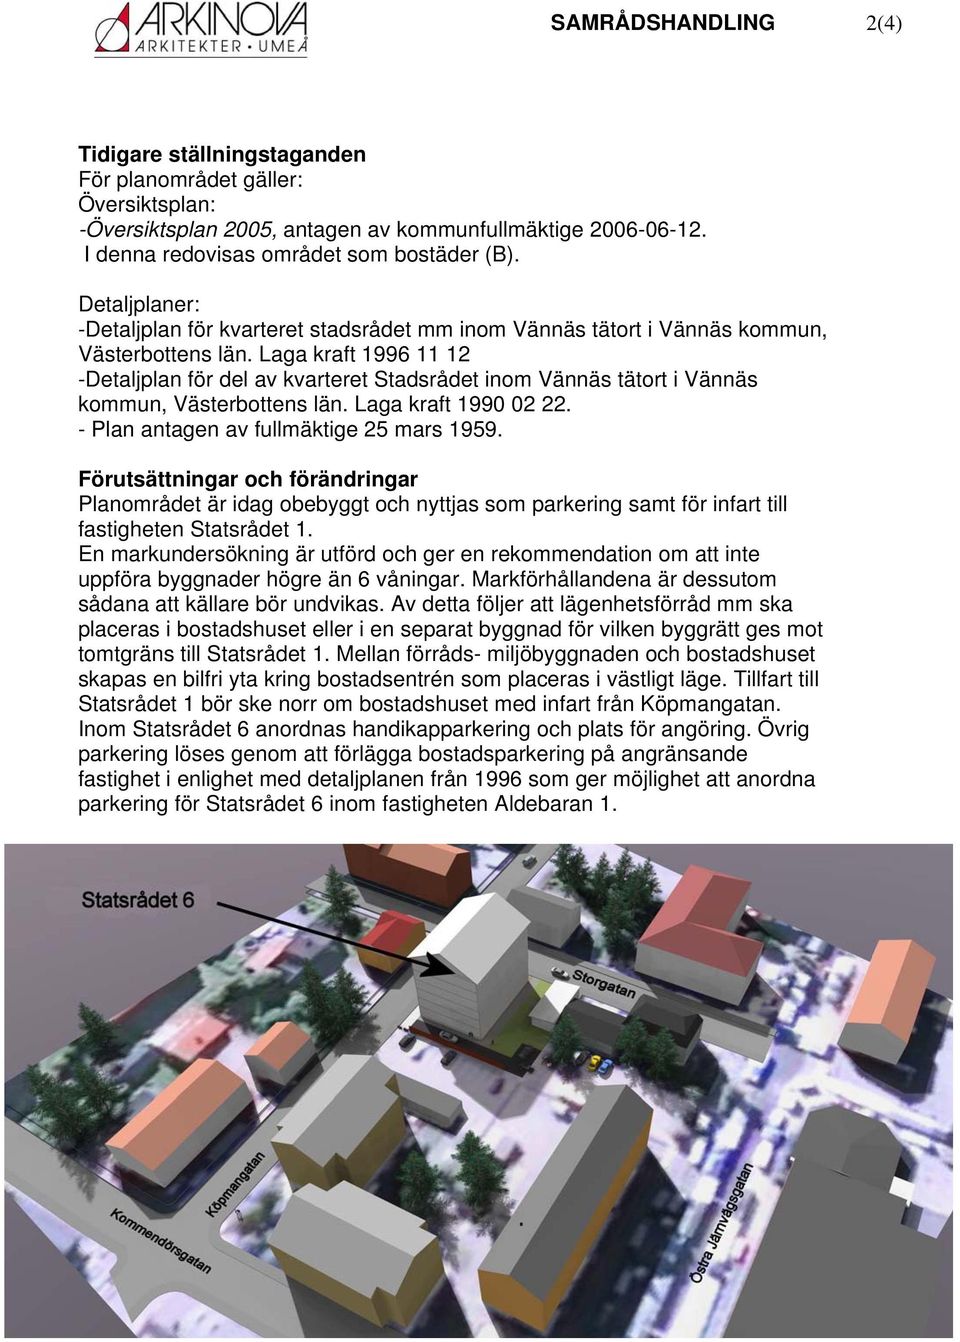 Laga kraft 1996 11 12 -Detaljplan för del av kvarteret Stadsrådet inm Vännäs tätrt i Vännäs kmmun, Västerbttens län. Laga kraft 1990 02 22. - Plan antagen av fullmäktige 25 mars 1959.